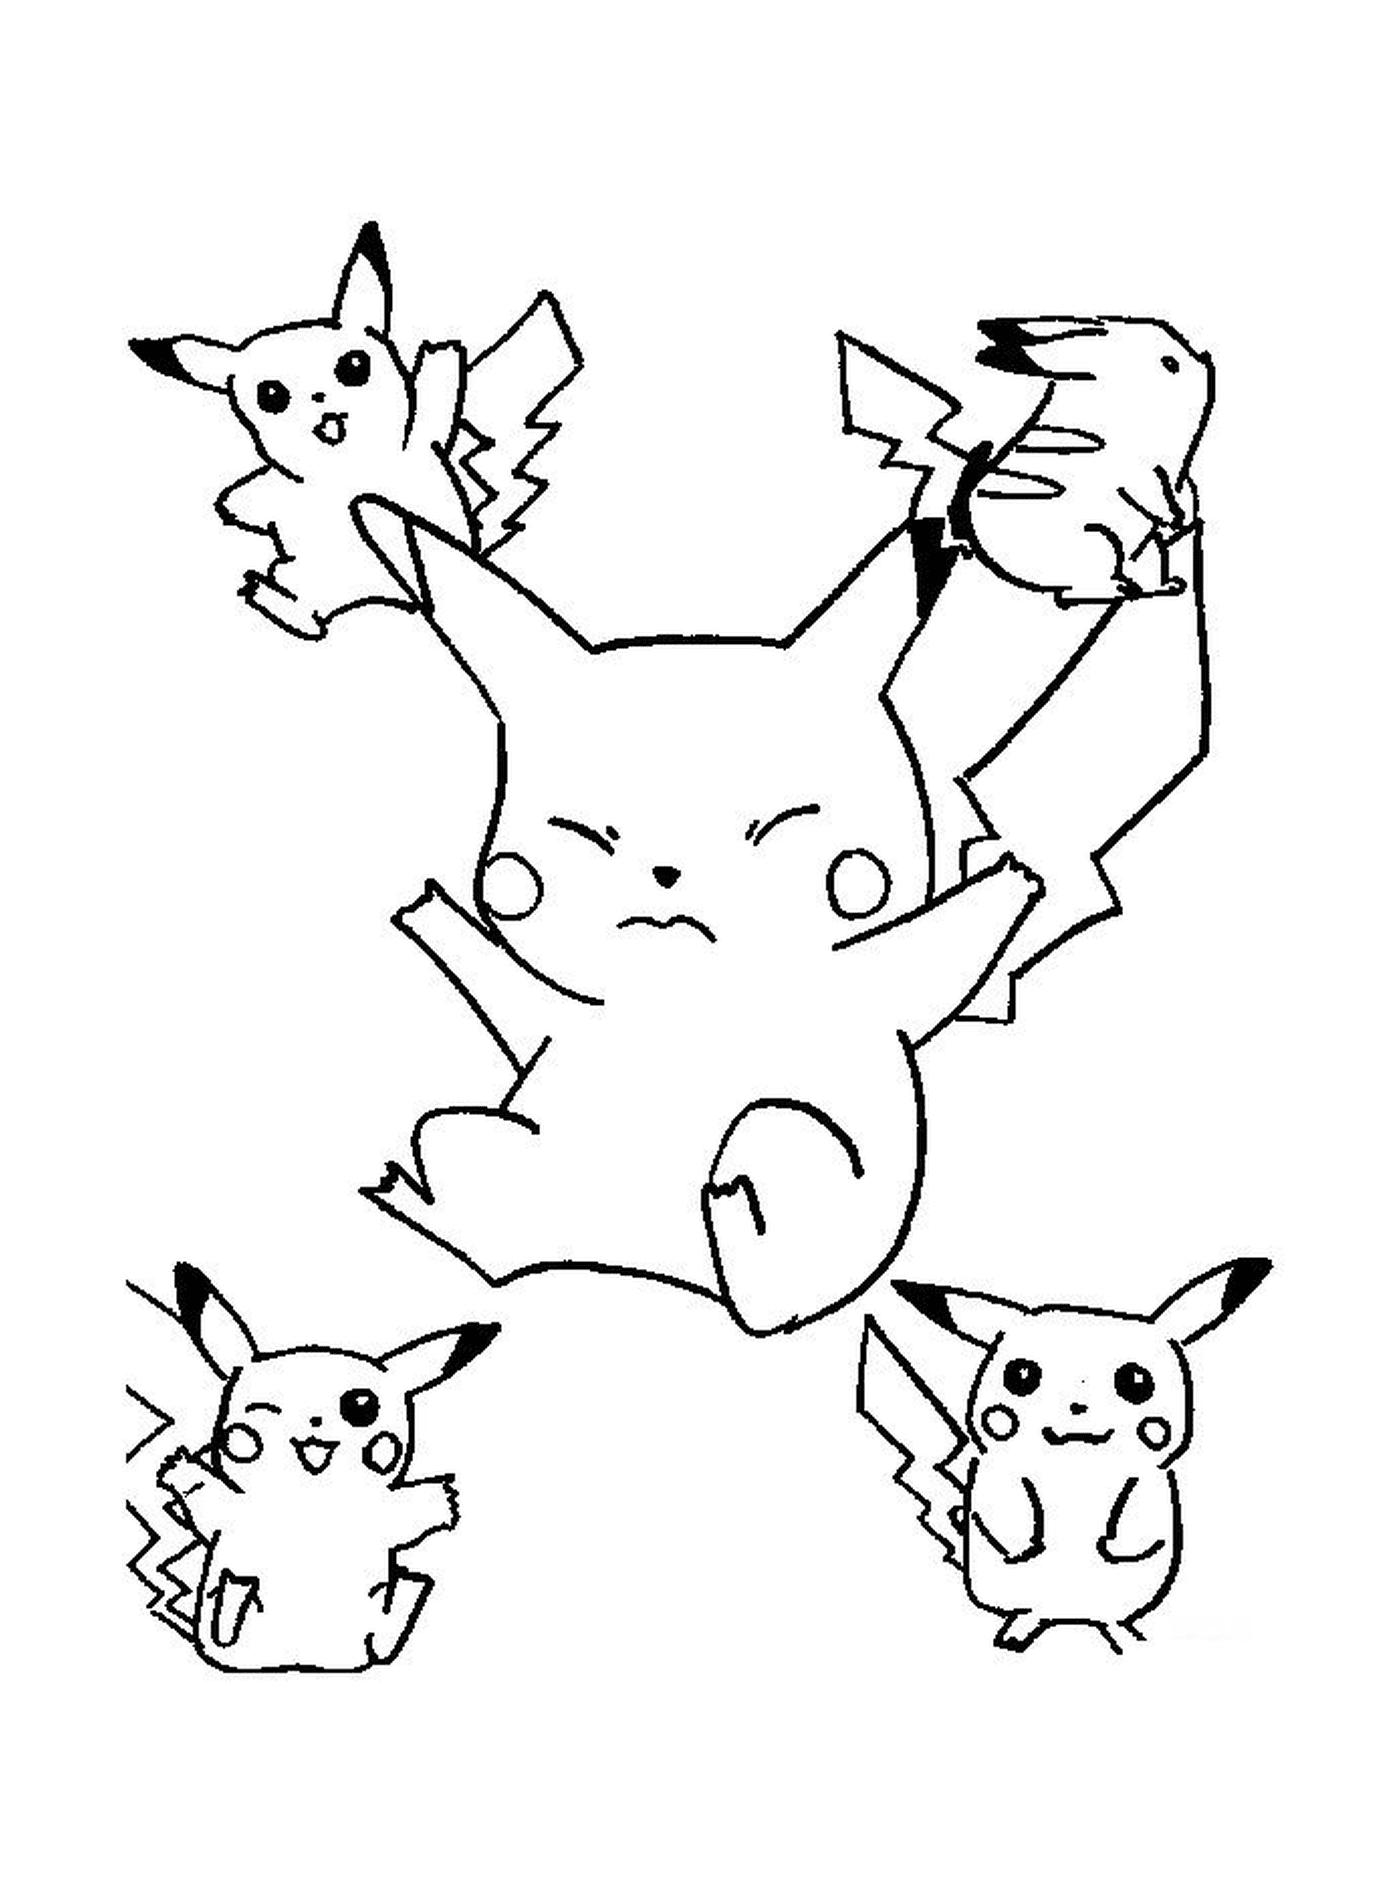  Un gruppo di Pikachu che salta in aria 